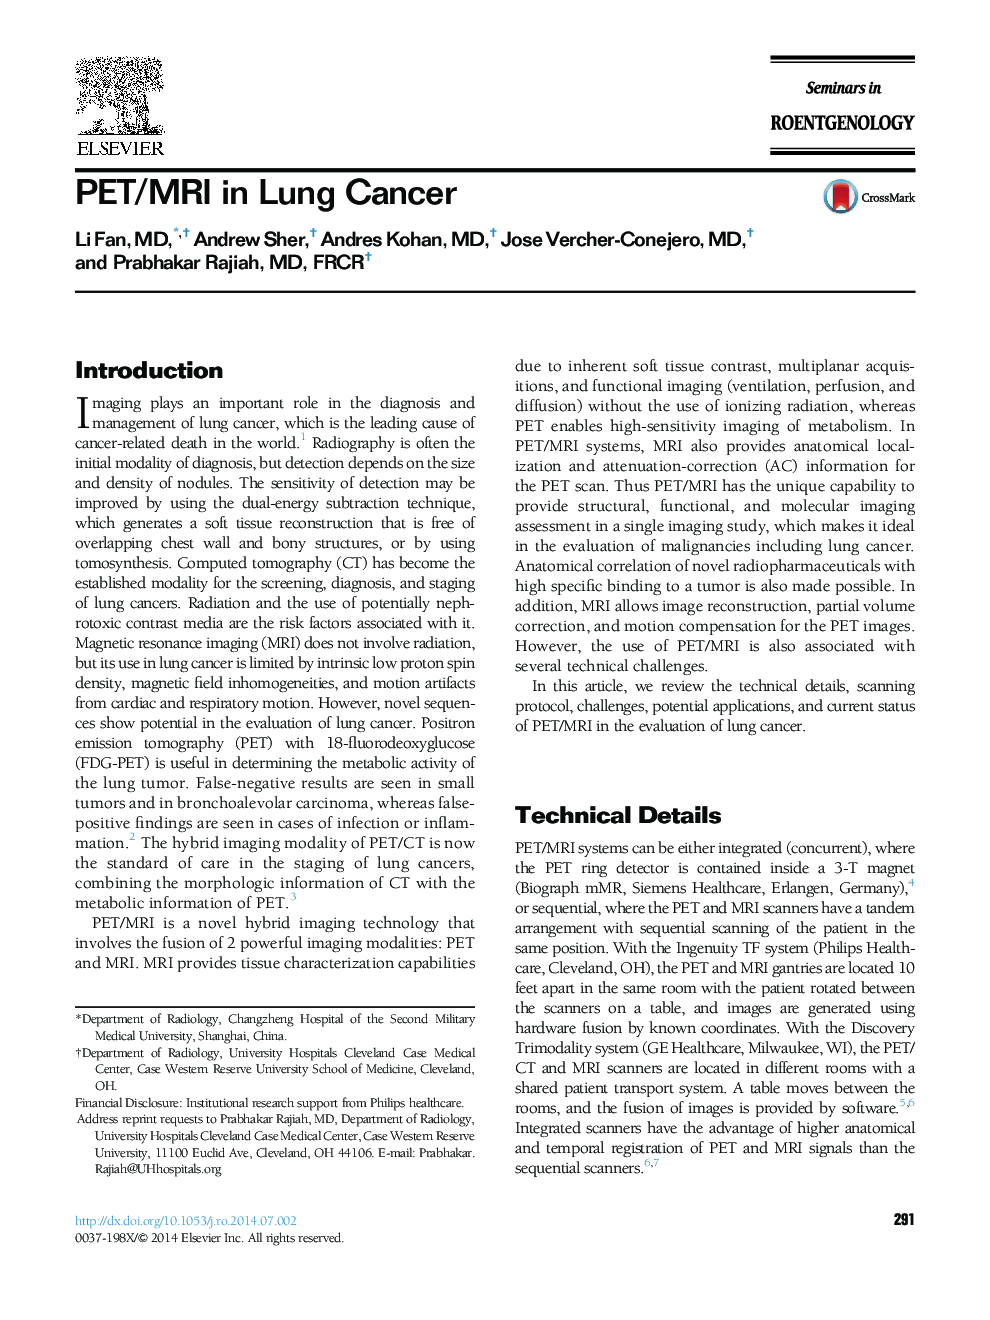 PET/MRI in Lung Cancer